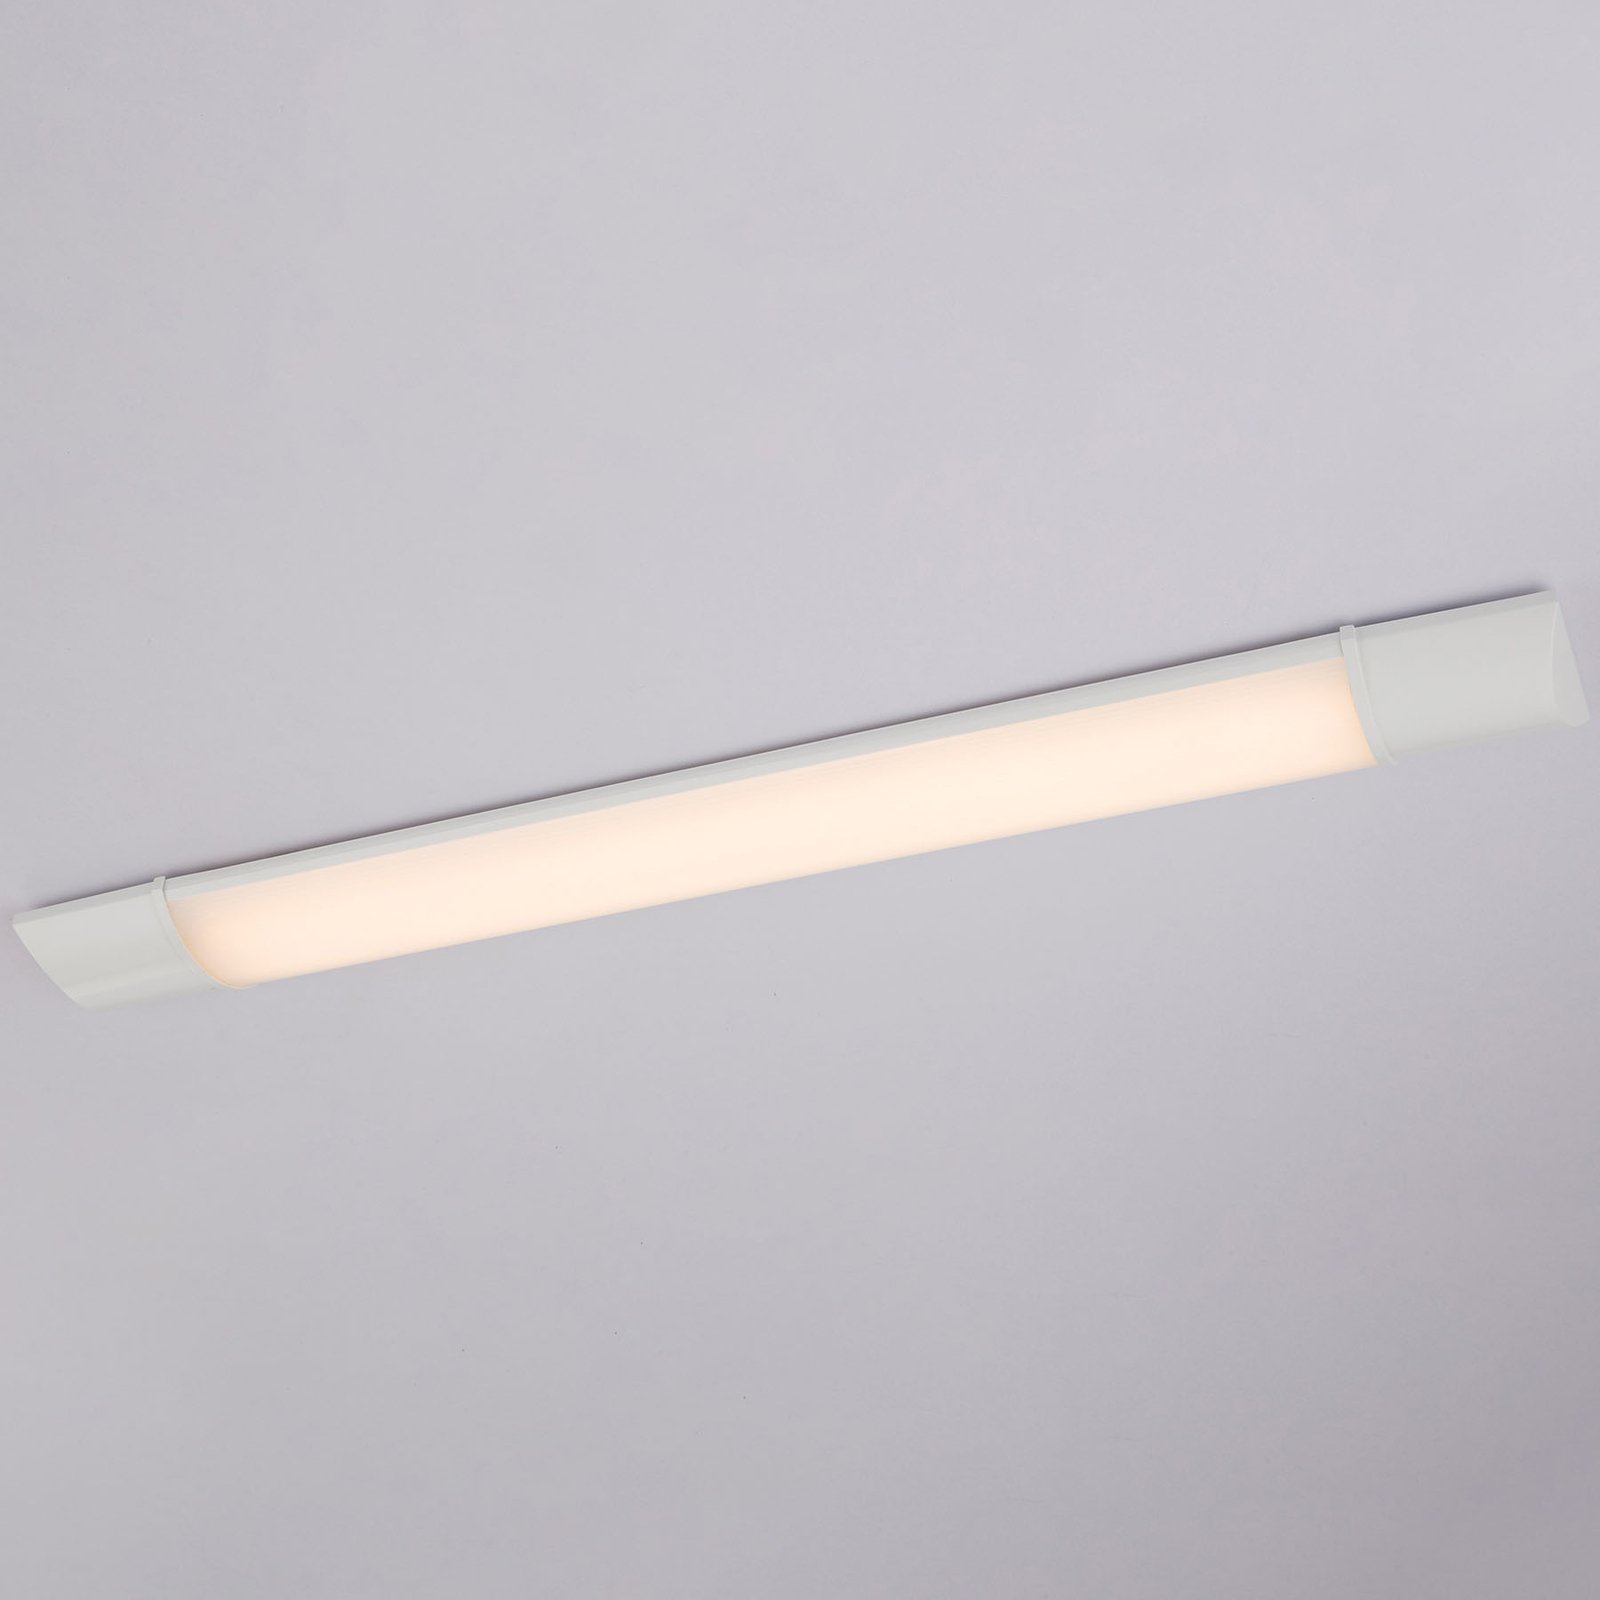 LED osvětlení pod skříňku Obara, IP20, délka 90 cm